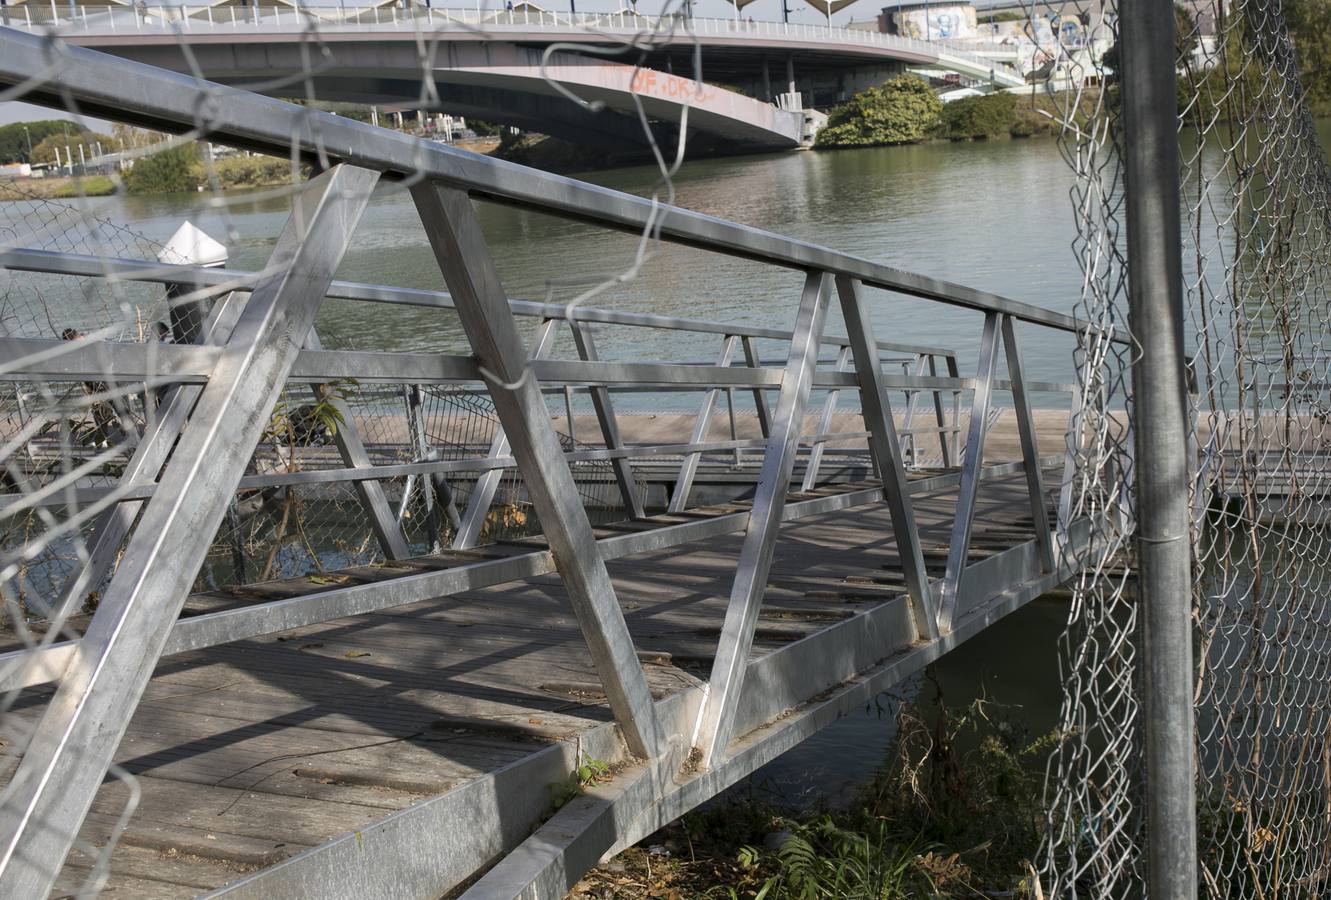 Los seis nuevos pantalanes del Río Guadalquivir en Sevilla, destrozados y sin vigilancia